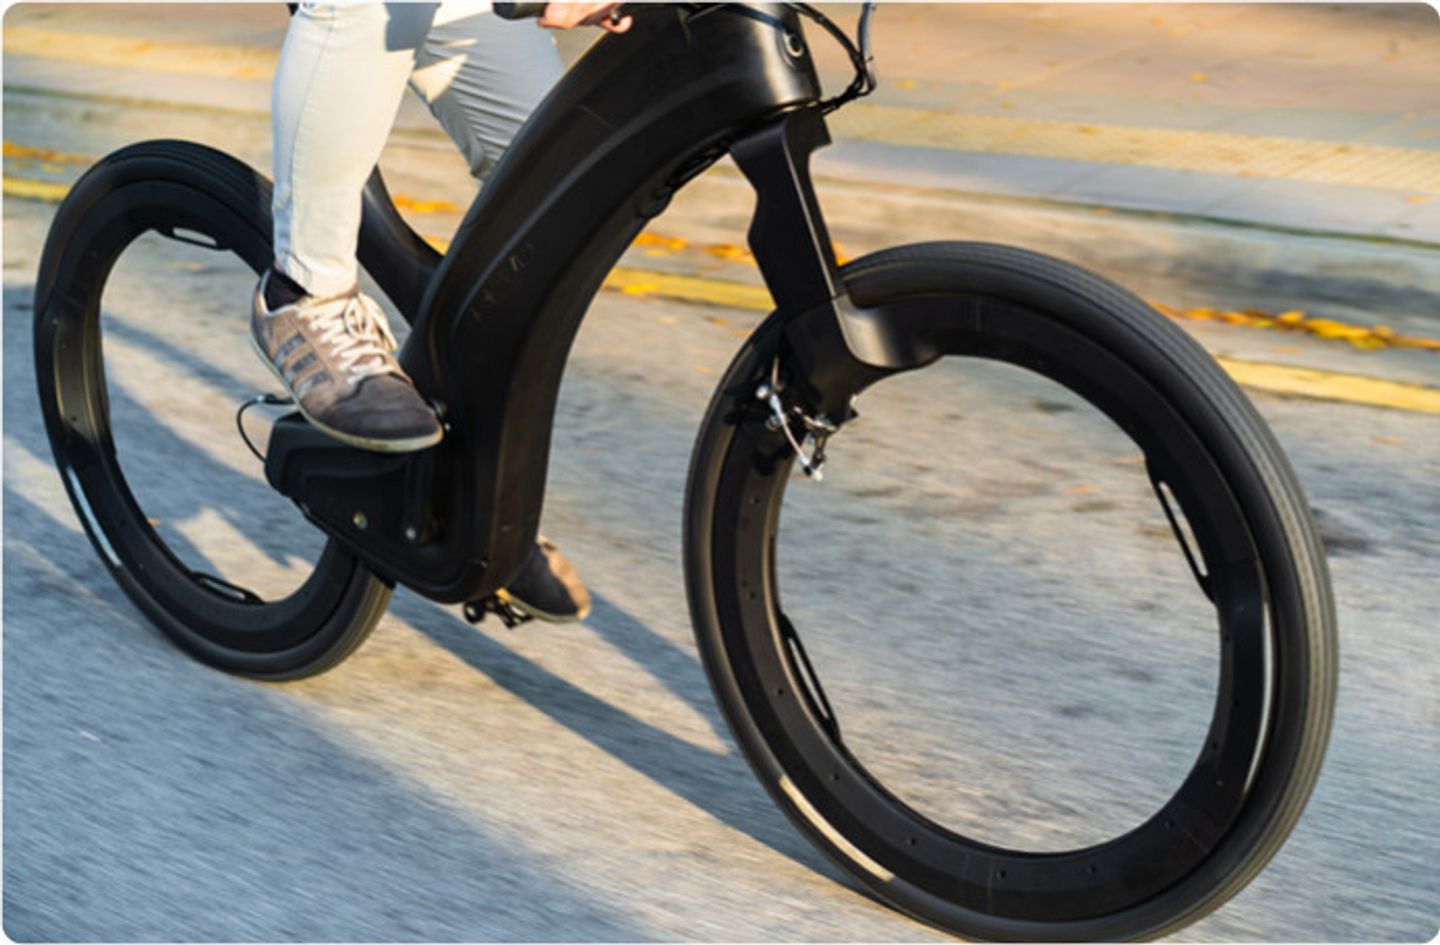 Kameraad afvoer activering E-bike zonder spaken, de futuristische eyecatcher onder de fietsen |  Gewoonvoorhem